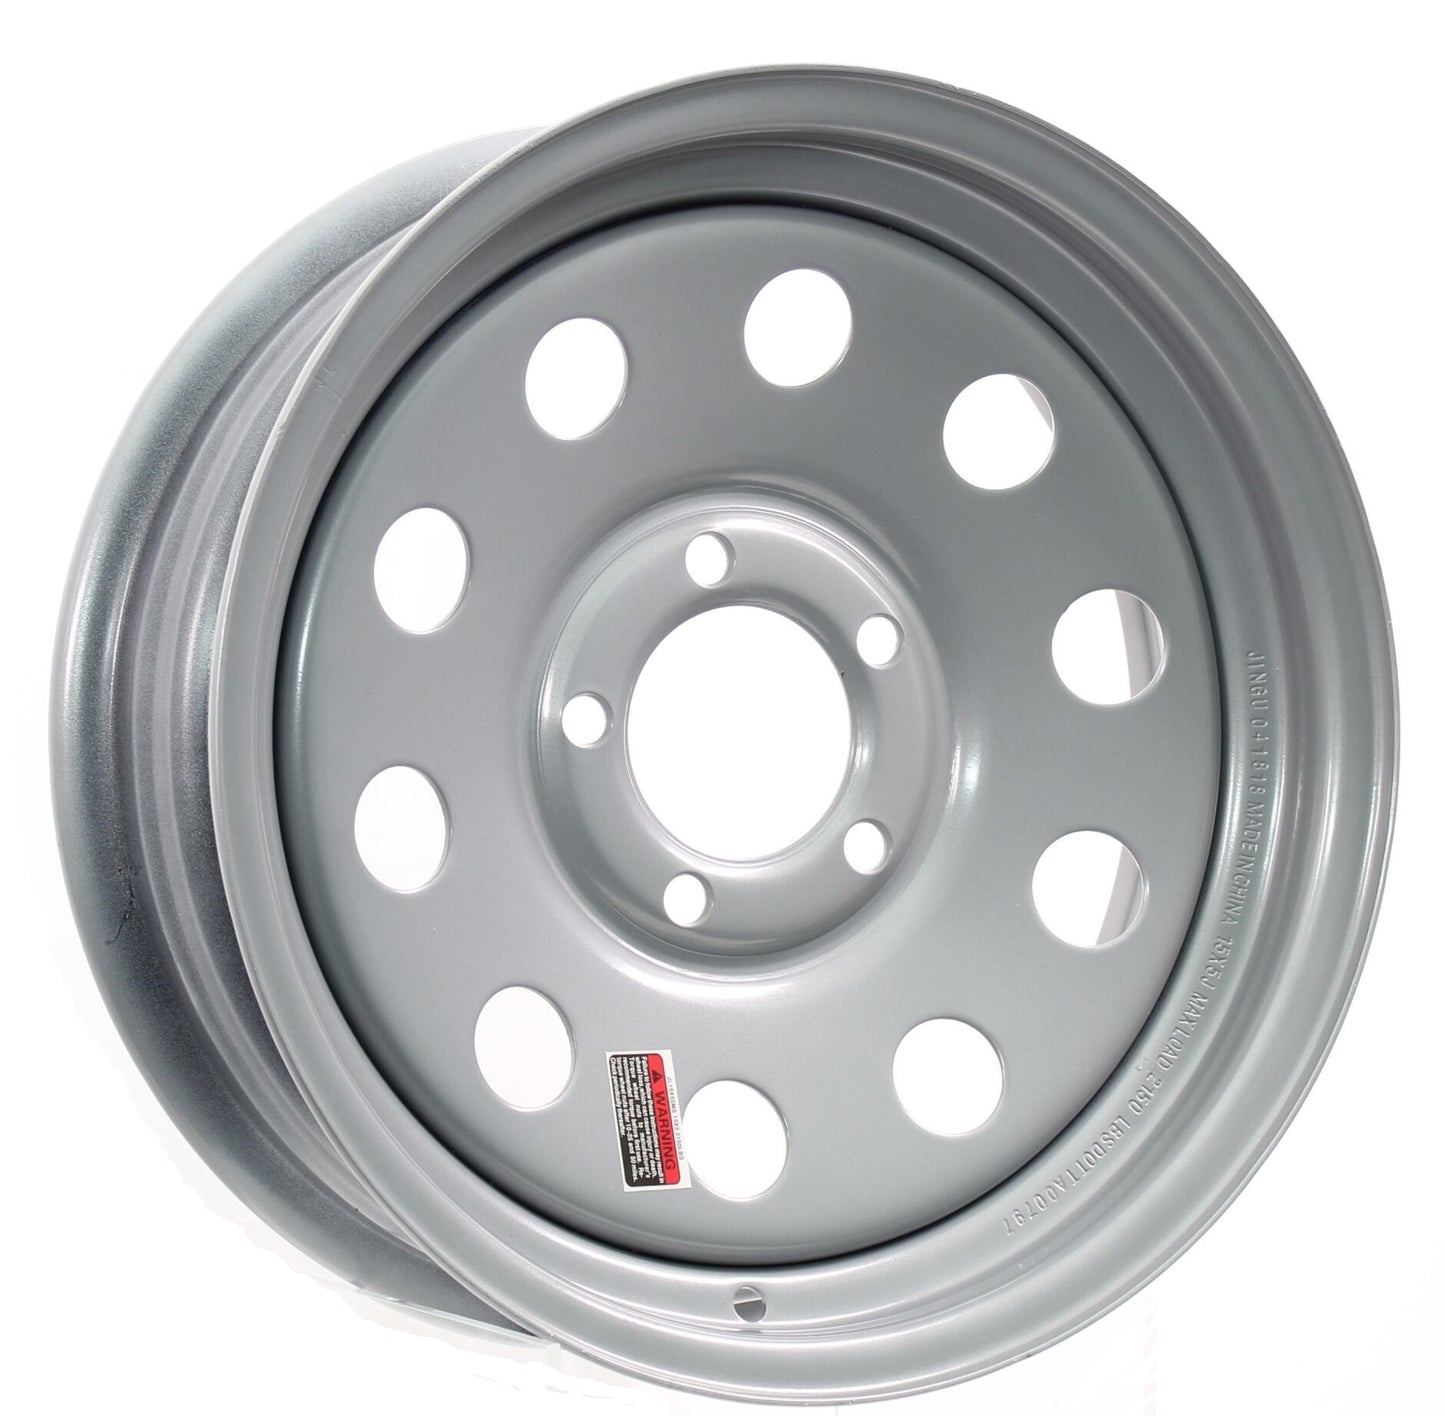 Trailer Rim Wheel 14 in. x 5.5 in. 5 Lug Hole Bolt Wheel Silver Modular Design